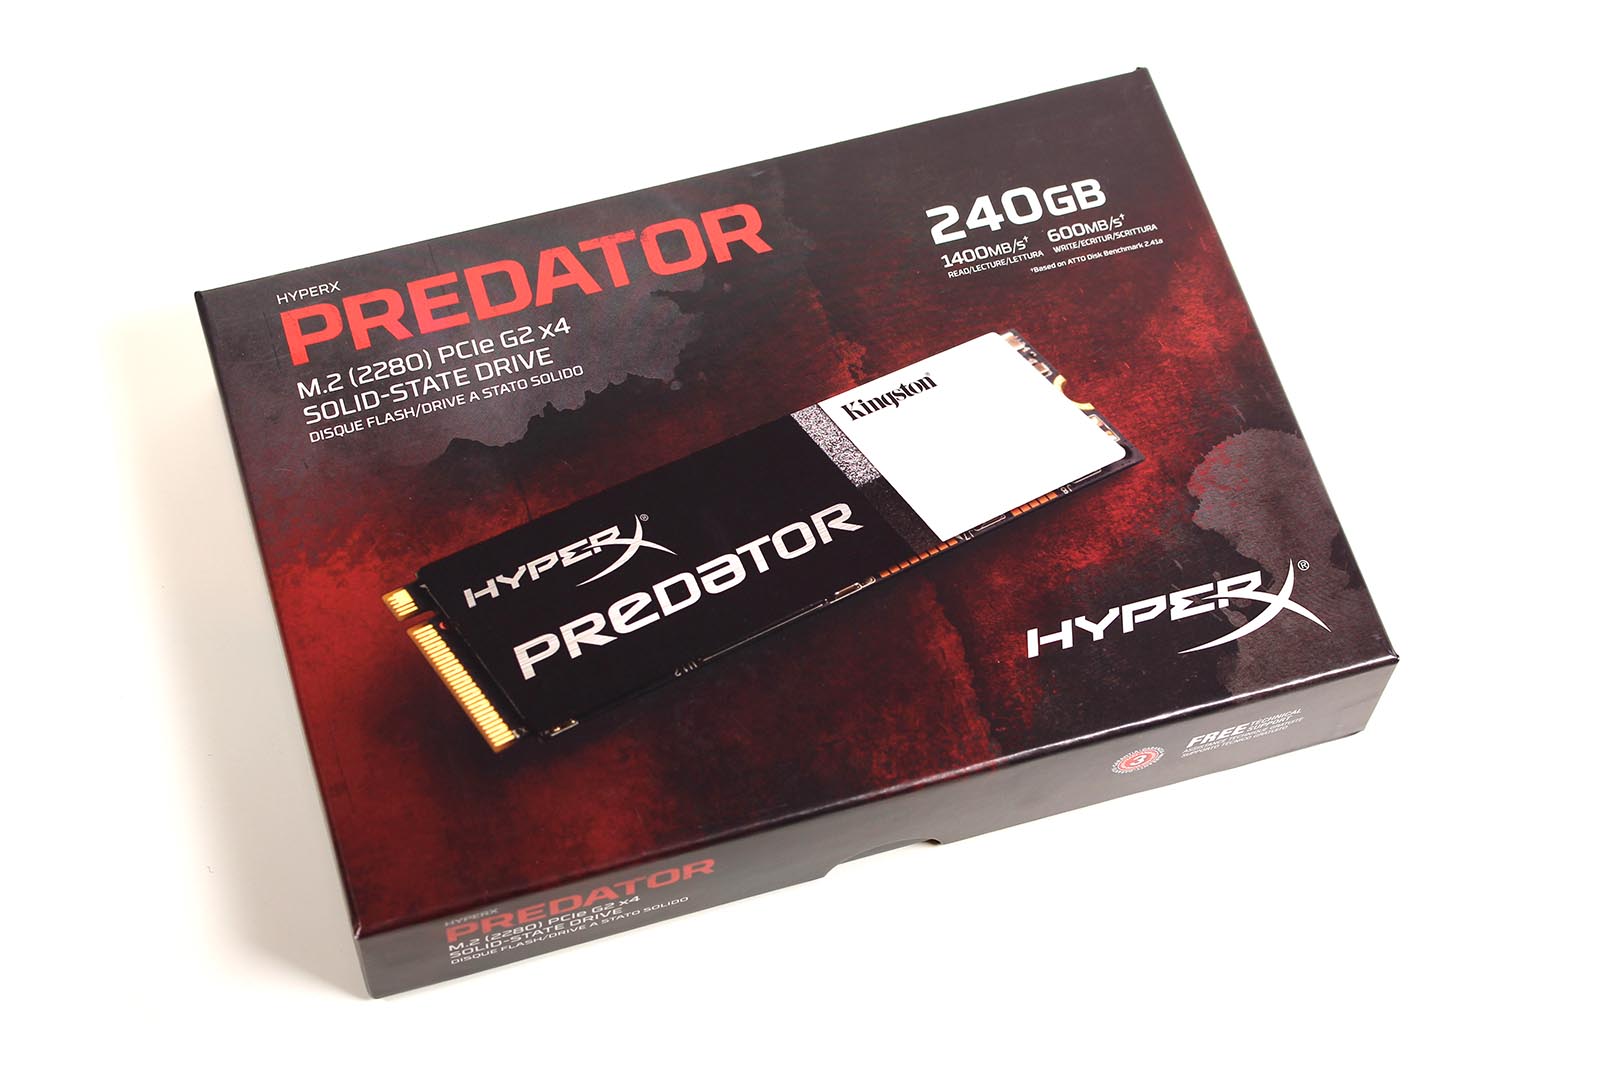 Kingston HyperX Predator SSD 240 GB Verpackung